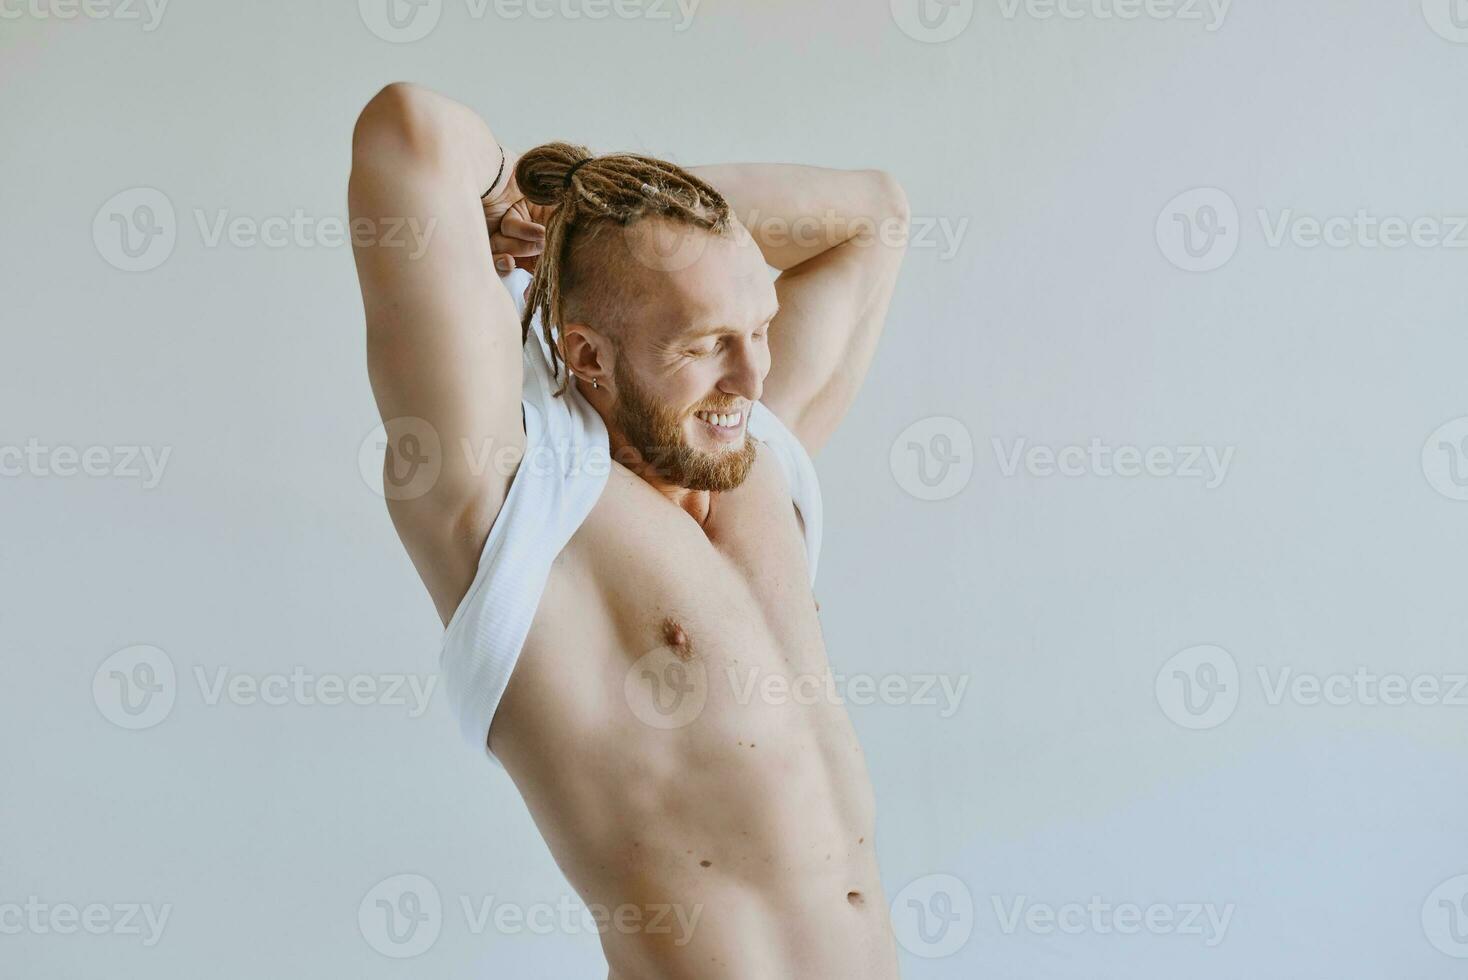 hermoso caucásico atlético riendo joven hombre tomando apagado blanco camiseta. aptitud física, culturismo, juventud concepto foto